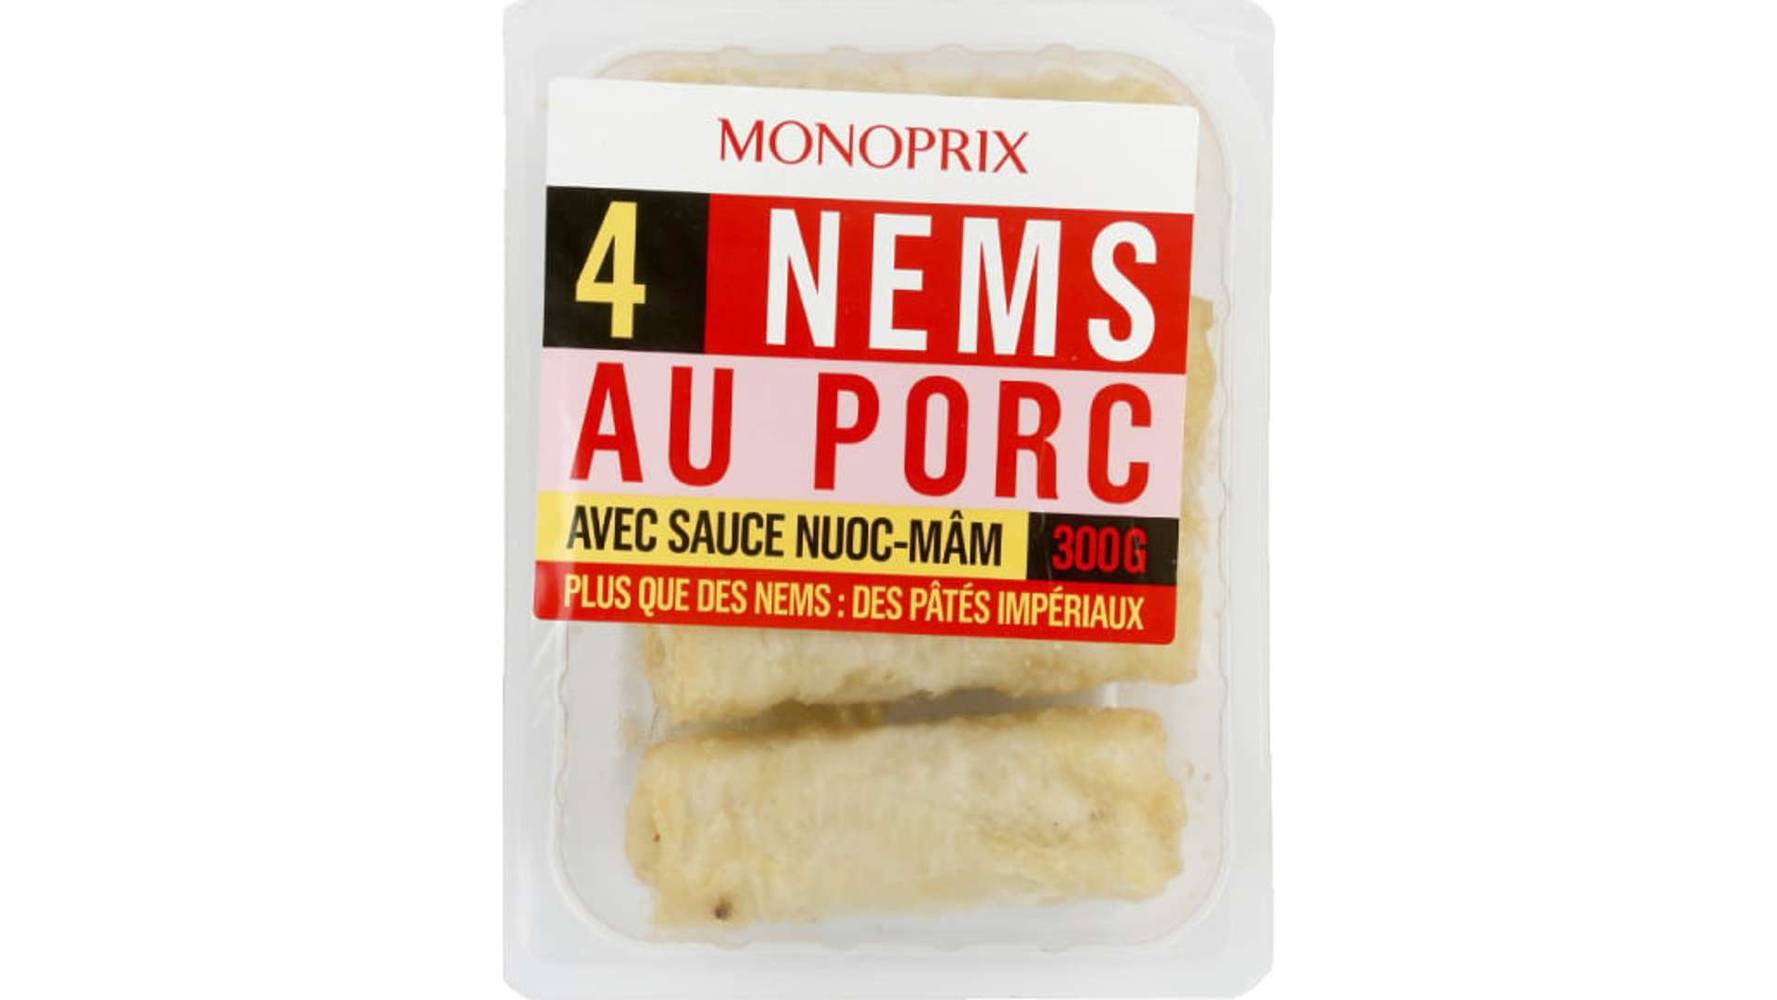 Monoprix - Nems au porc avec sauce nuoc-mâm